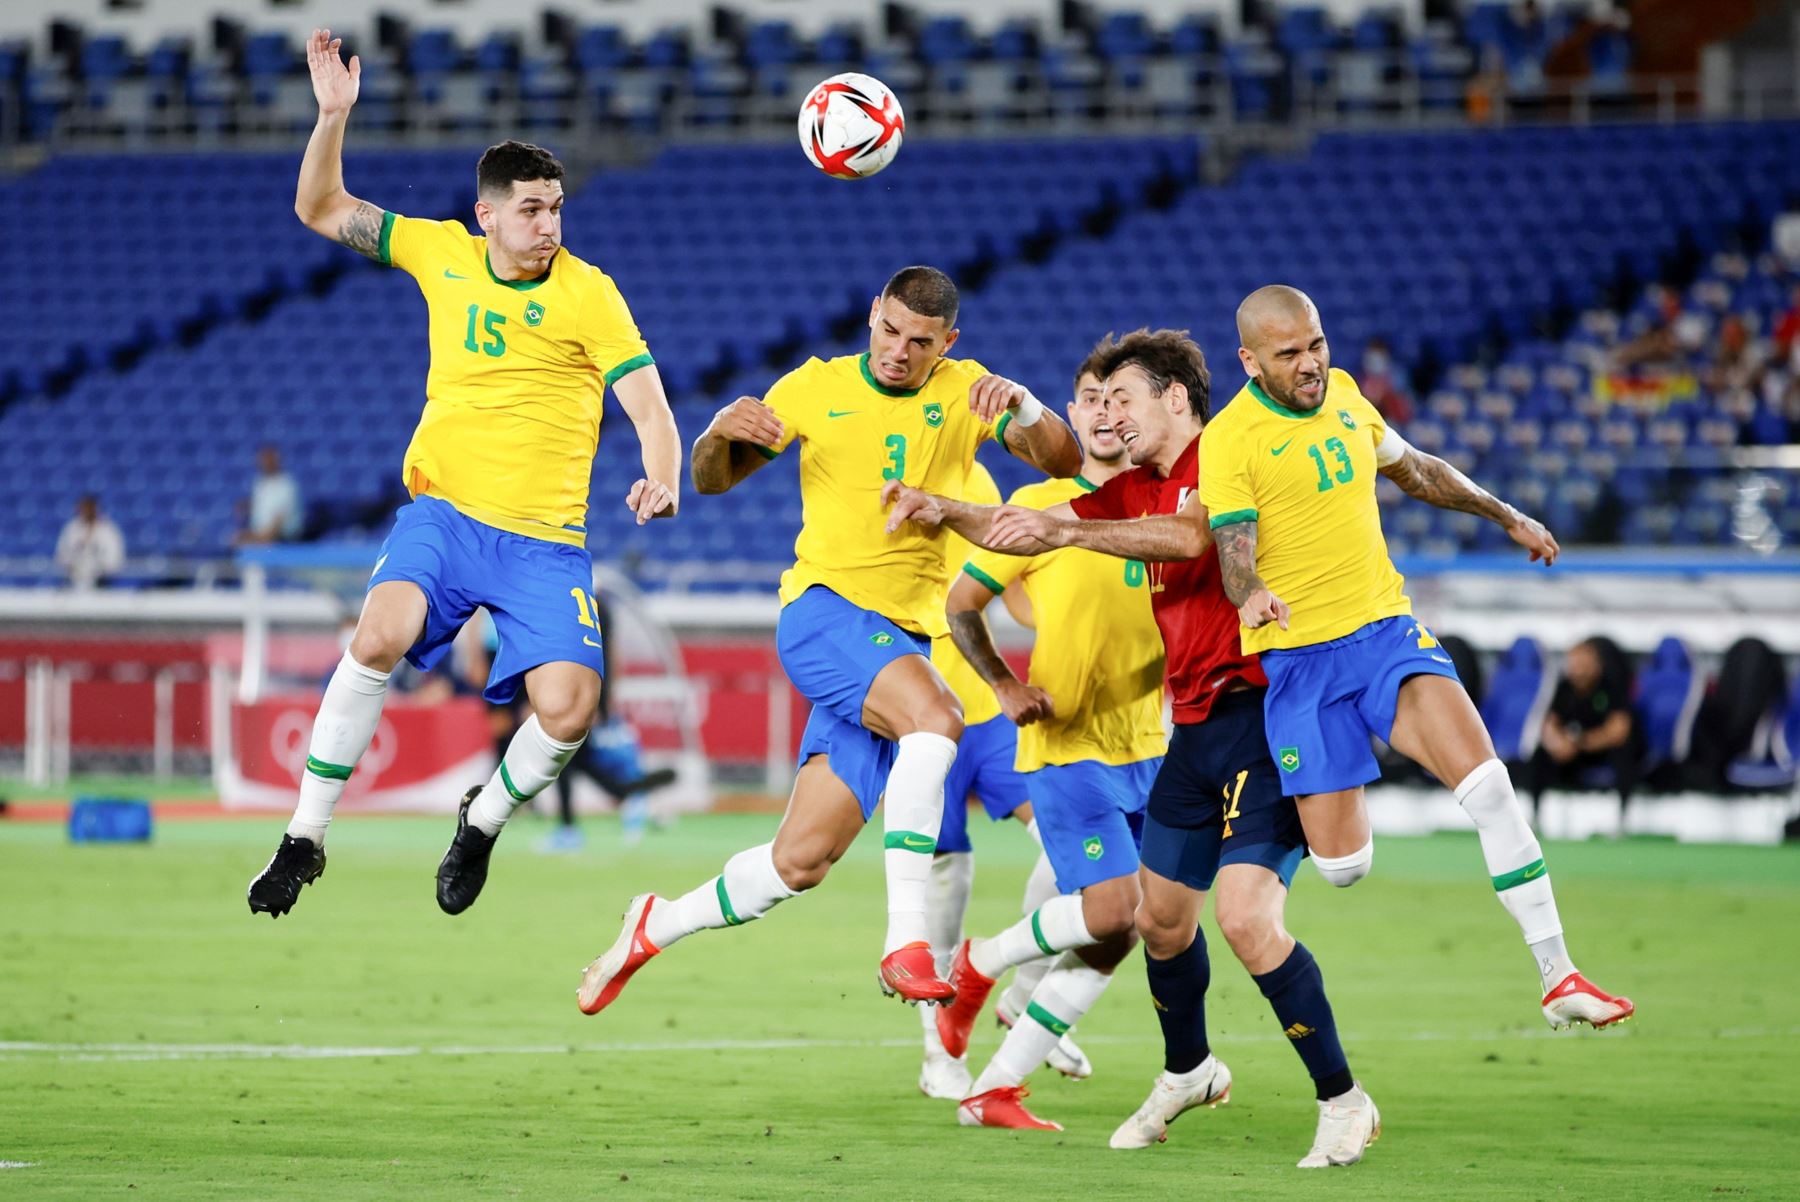 El delantero español Mikel Merino disputa un balón ante los defensas brasileños Nino, Diego Carlos y Dani Alves en la final de fútbol masculino de los Juegos Olímpicos de Tokio 2020, en el Estadio Internacional de Yokohama. Foto: EFE